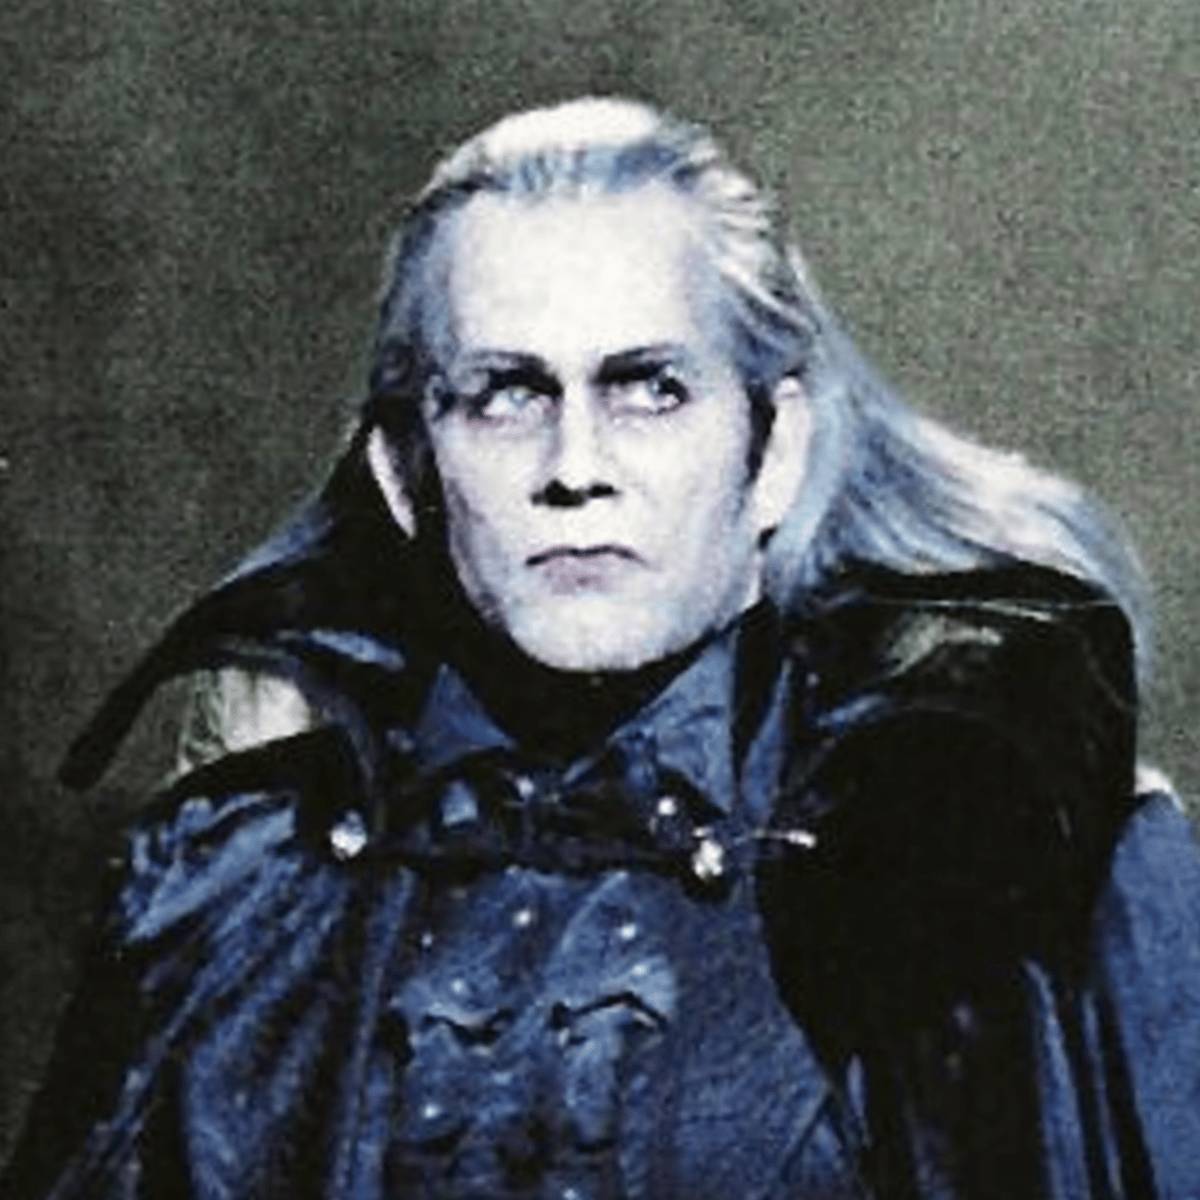 Count Von Krolock